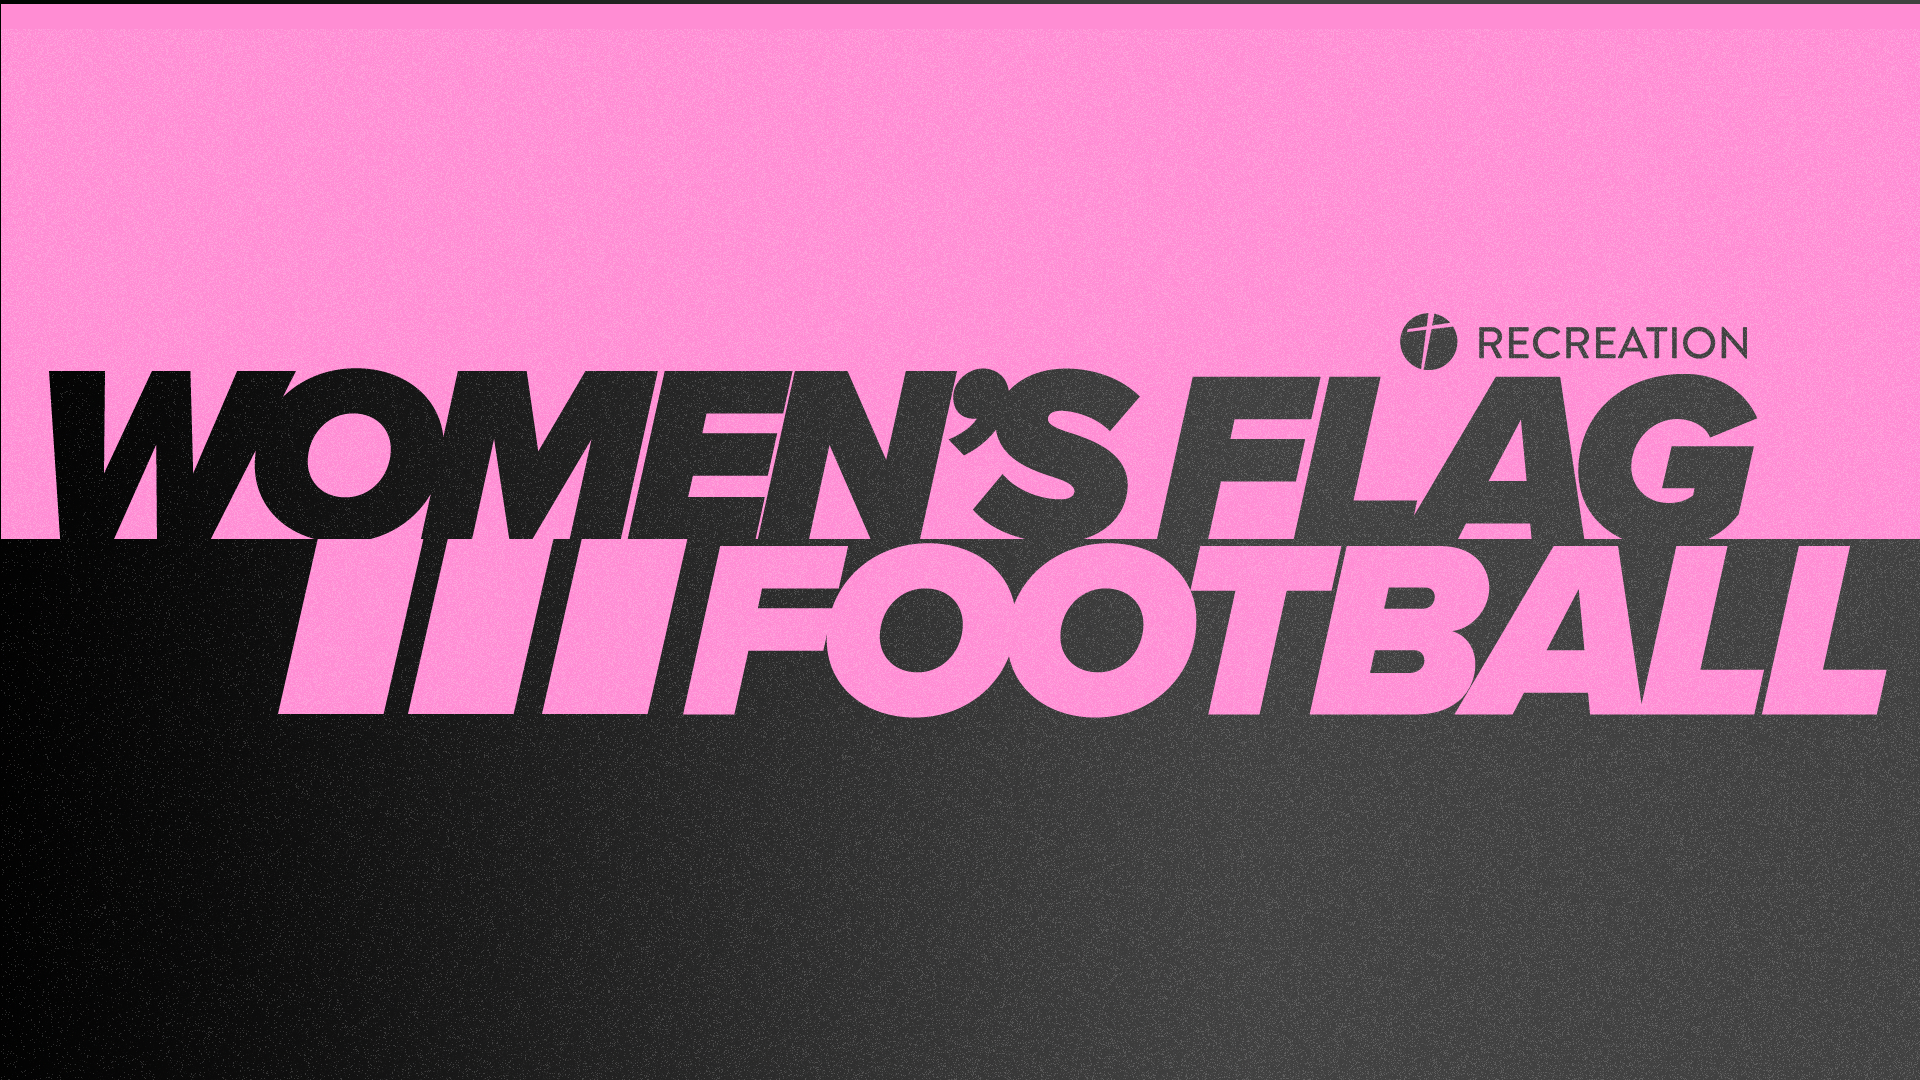 Women's Flag Football